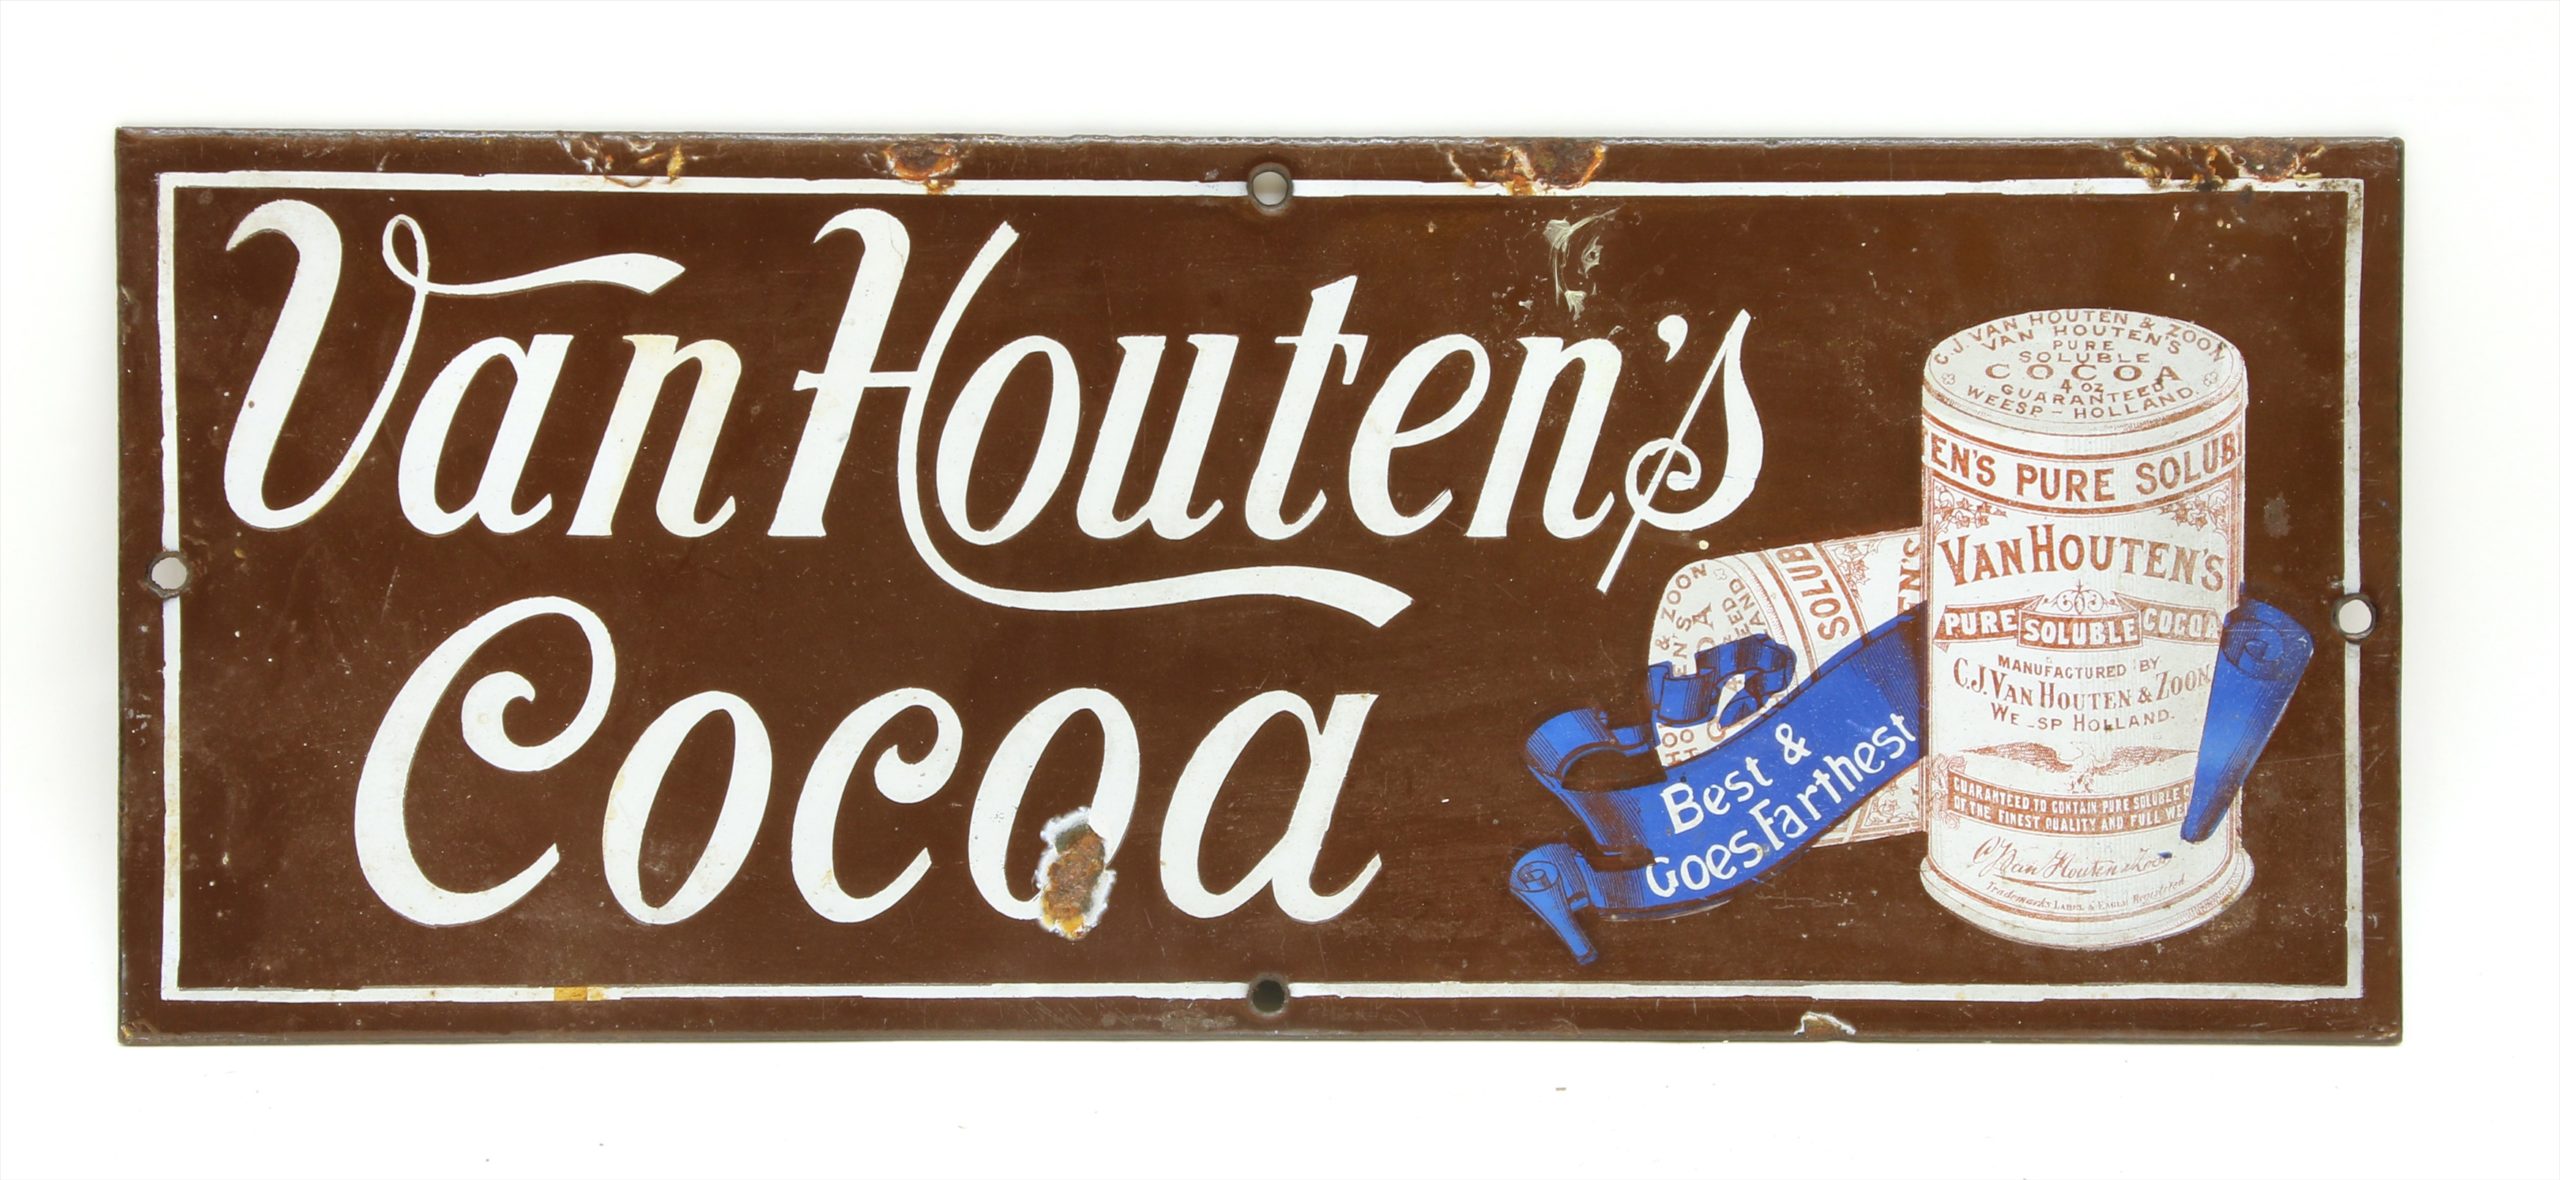 Van Houten et la révolution du cacao en poudre